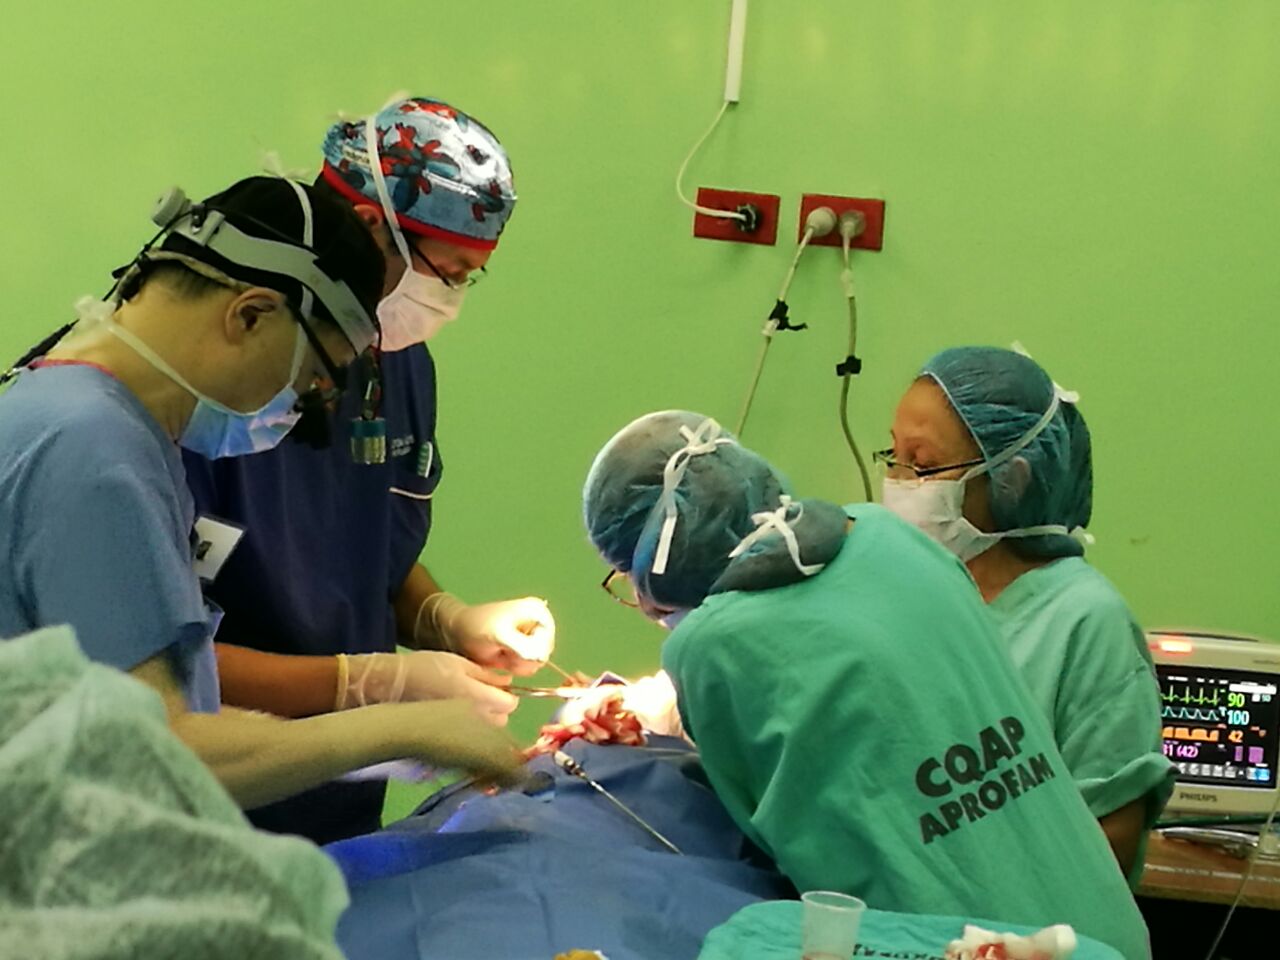 Las cirugías de labio leporino no tienen consto y los médicos le dan seguimiento a los casos hasta garantizar la recuperación de los pacientes. (Foto Prensa Libre: Cortesía)